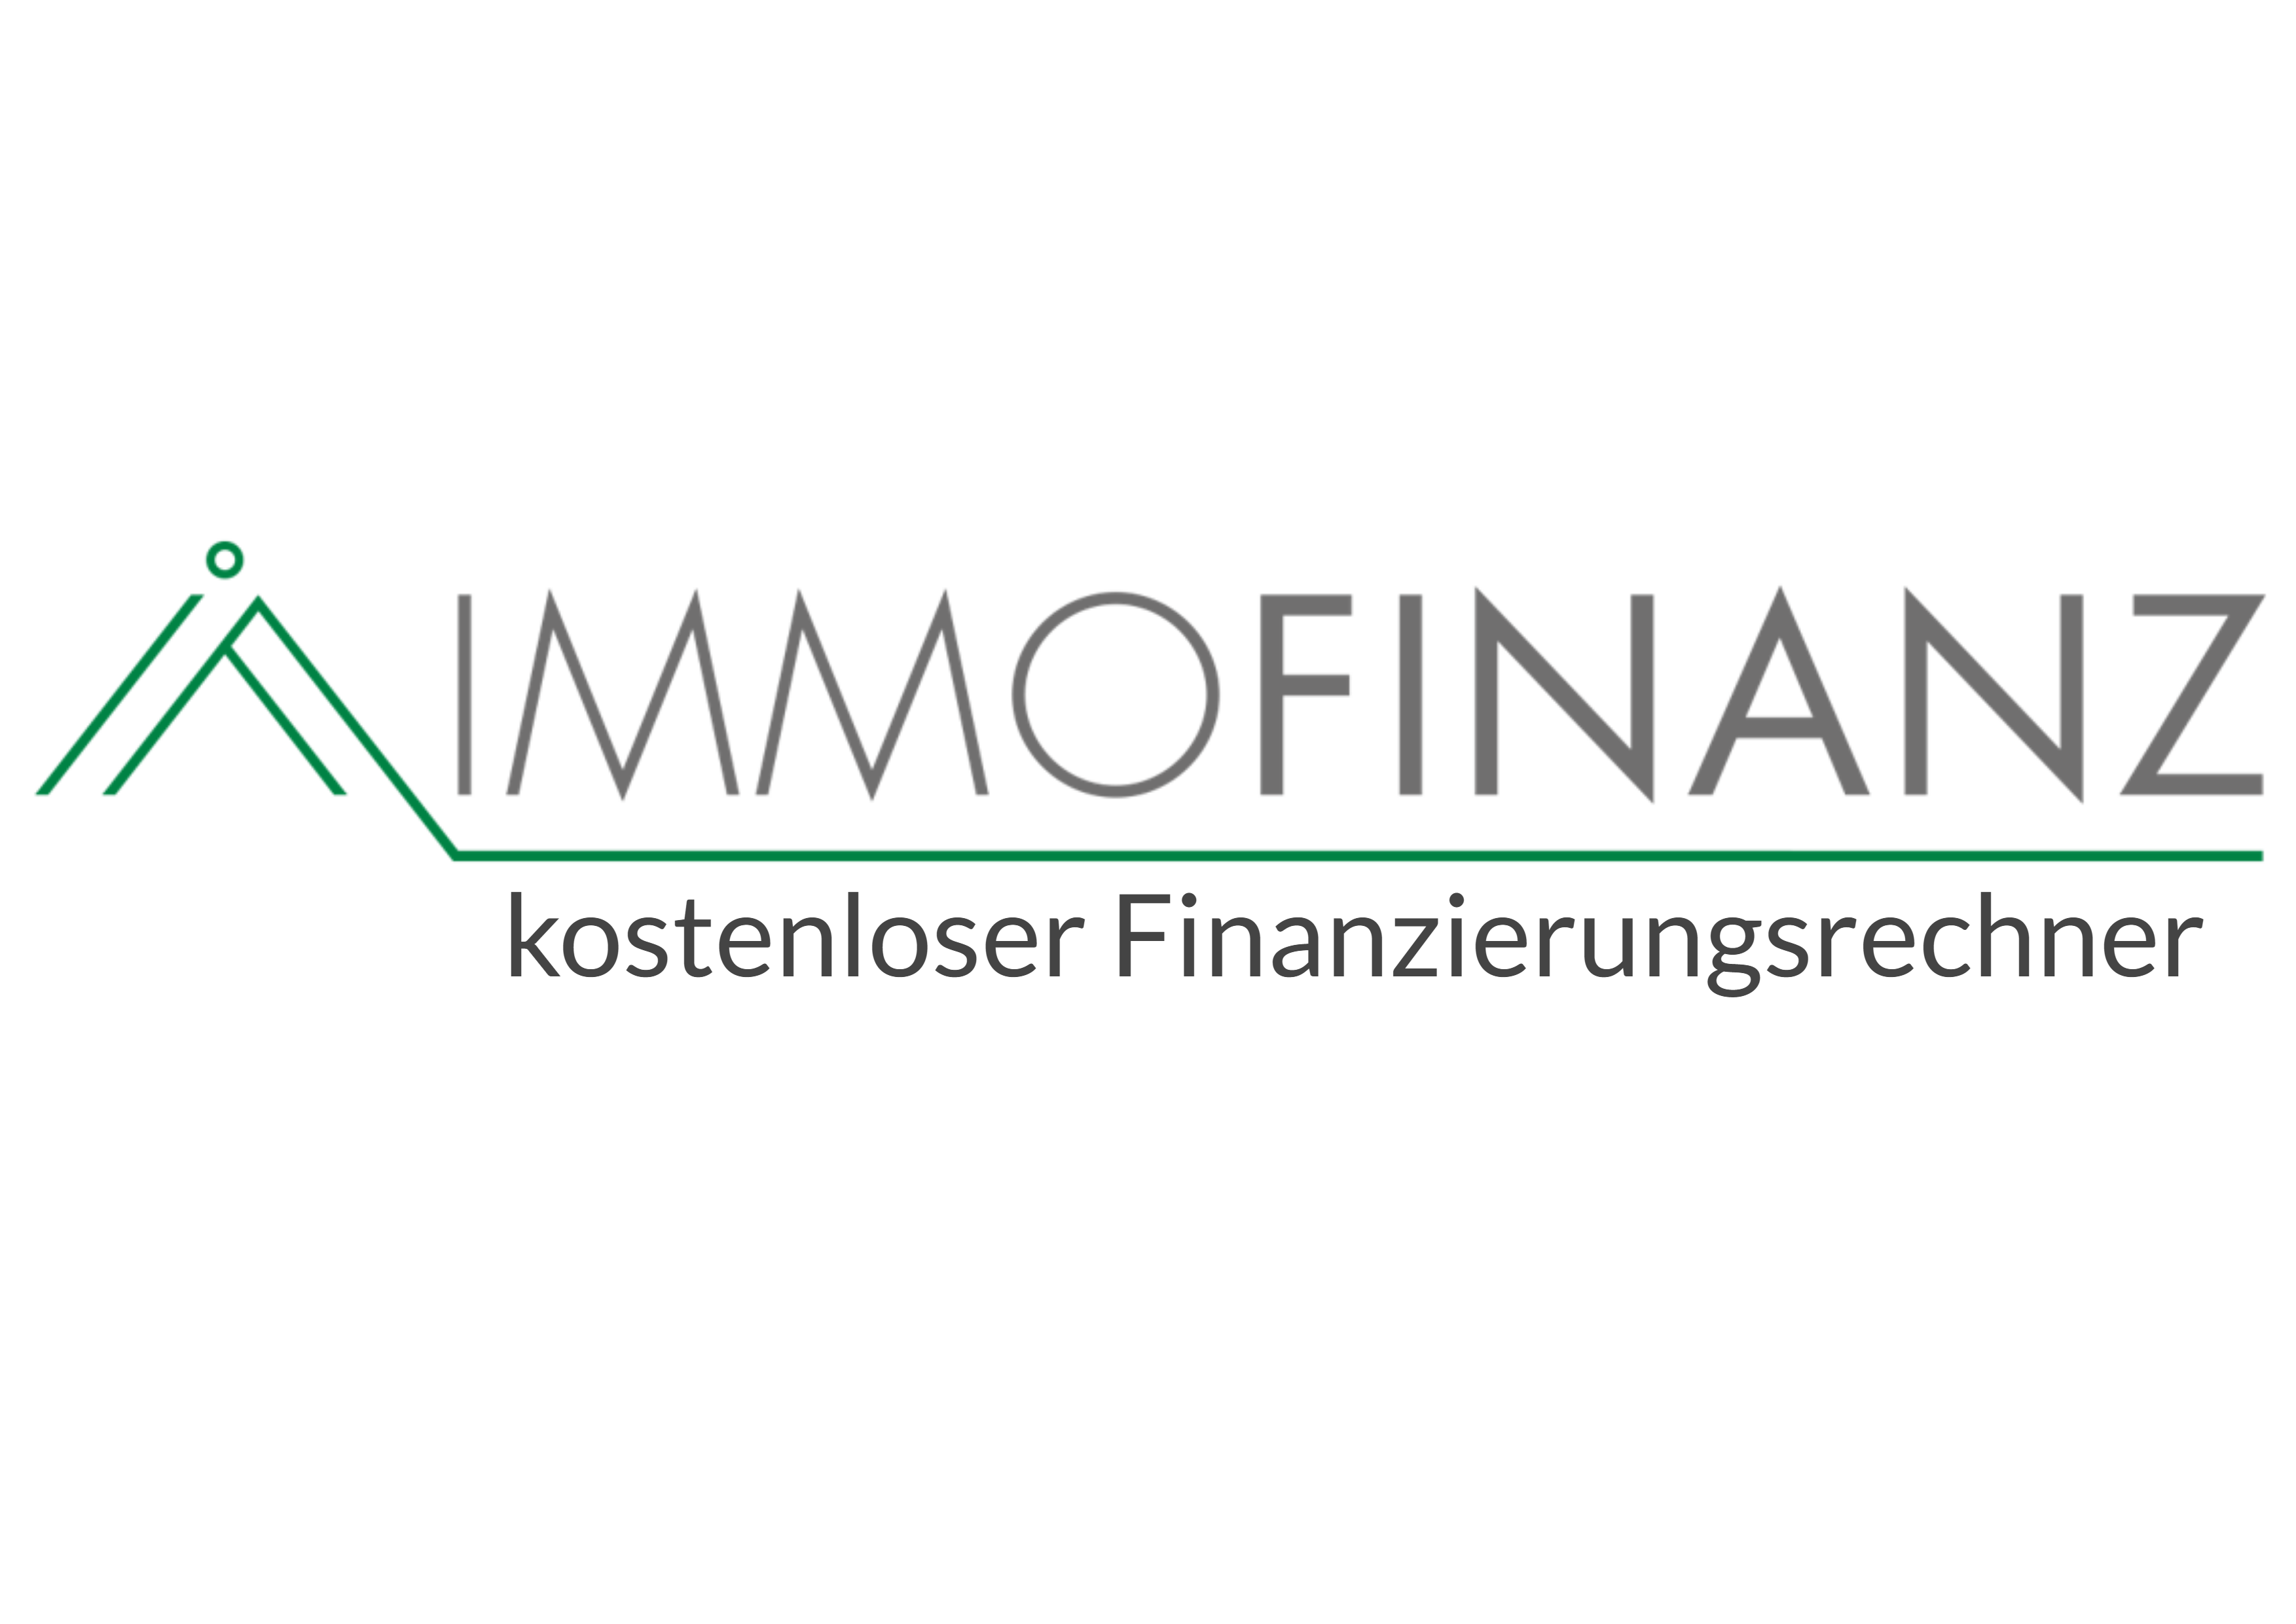 Immofinanz - Ihr Finanzierungsrechner